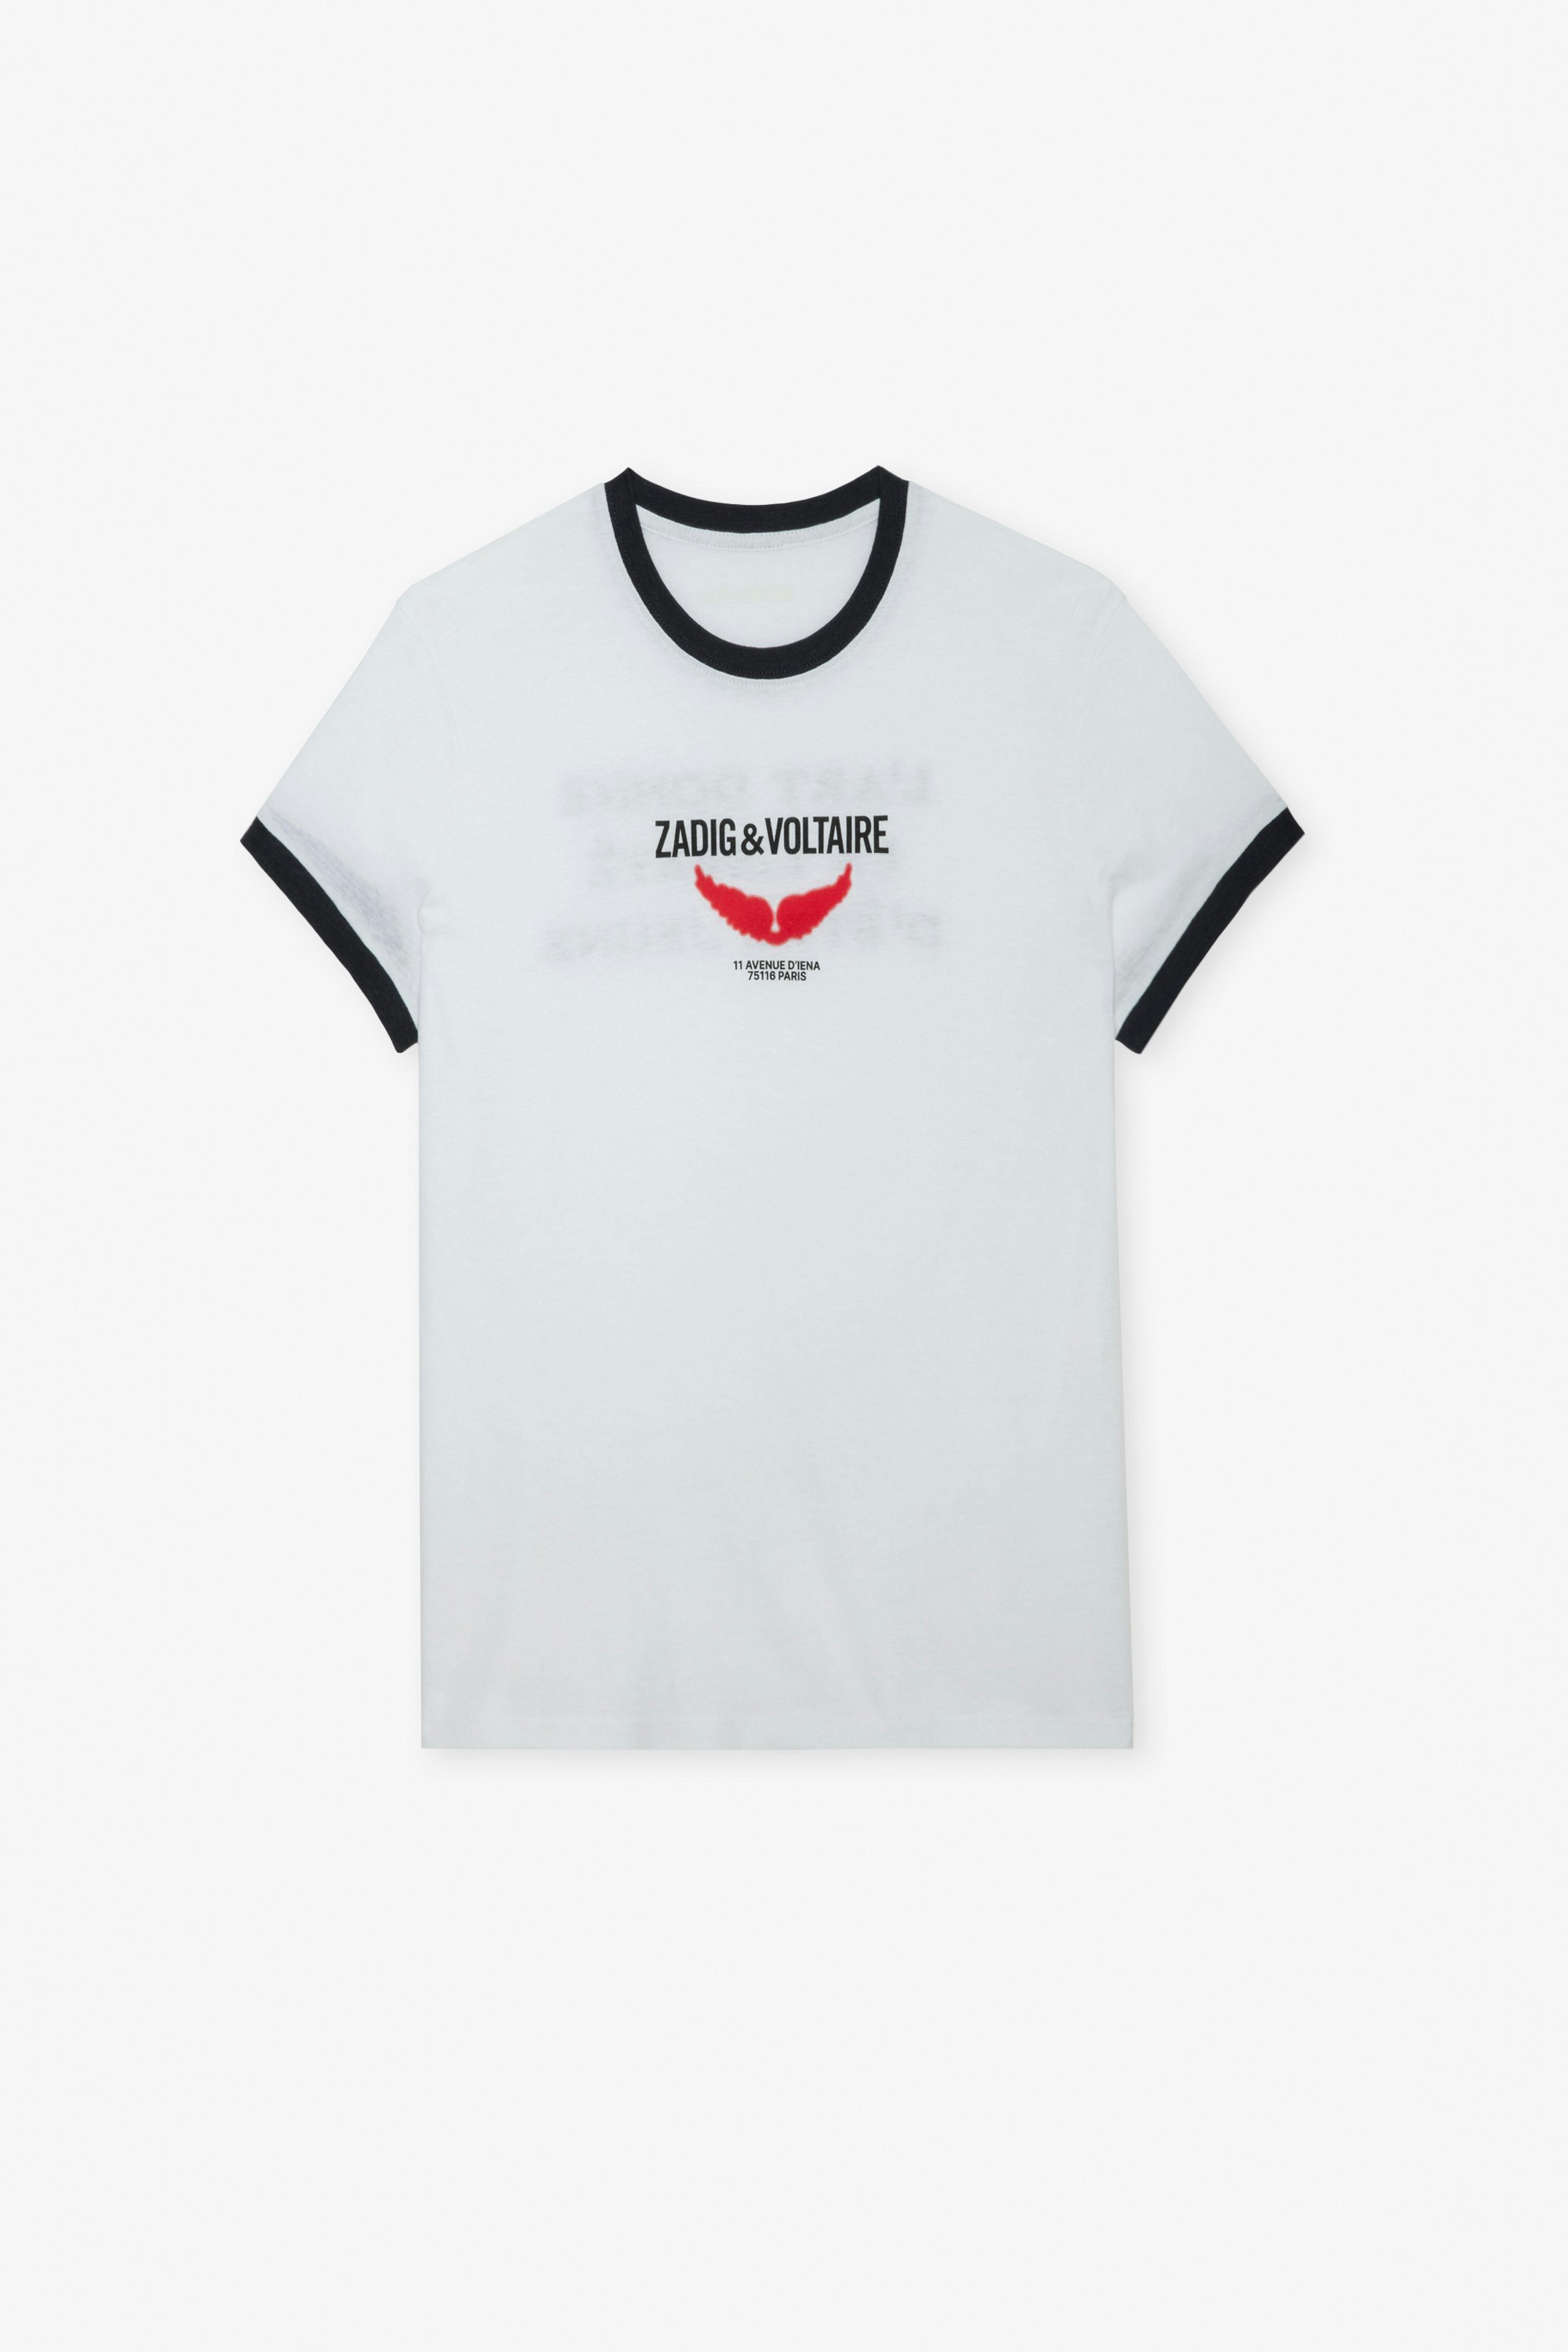 Camiseta Zoe Wings Liberté Camiseta blanca para mujer con bordes en contraste, estampado de alas e inscripción "L'art donne la liberté d'être jeune".